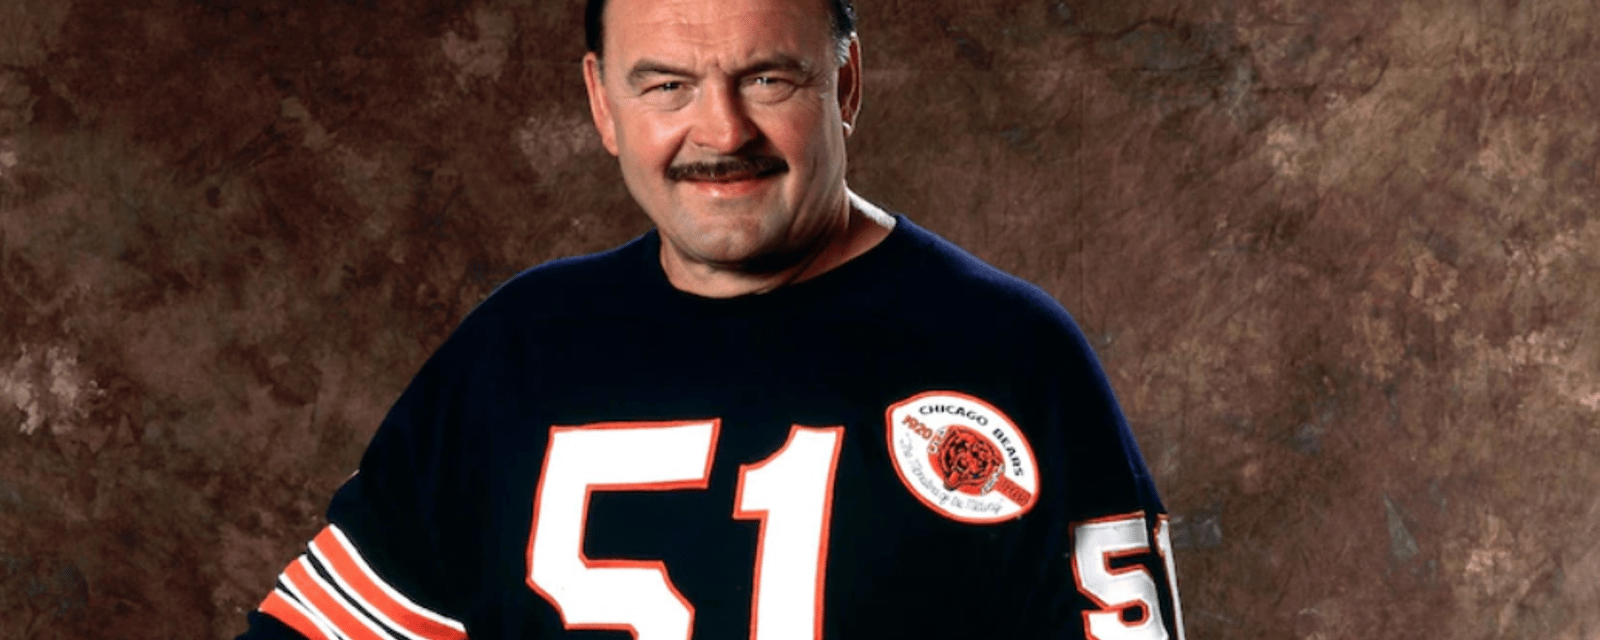 Bears legend Dick Butkus has died 